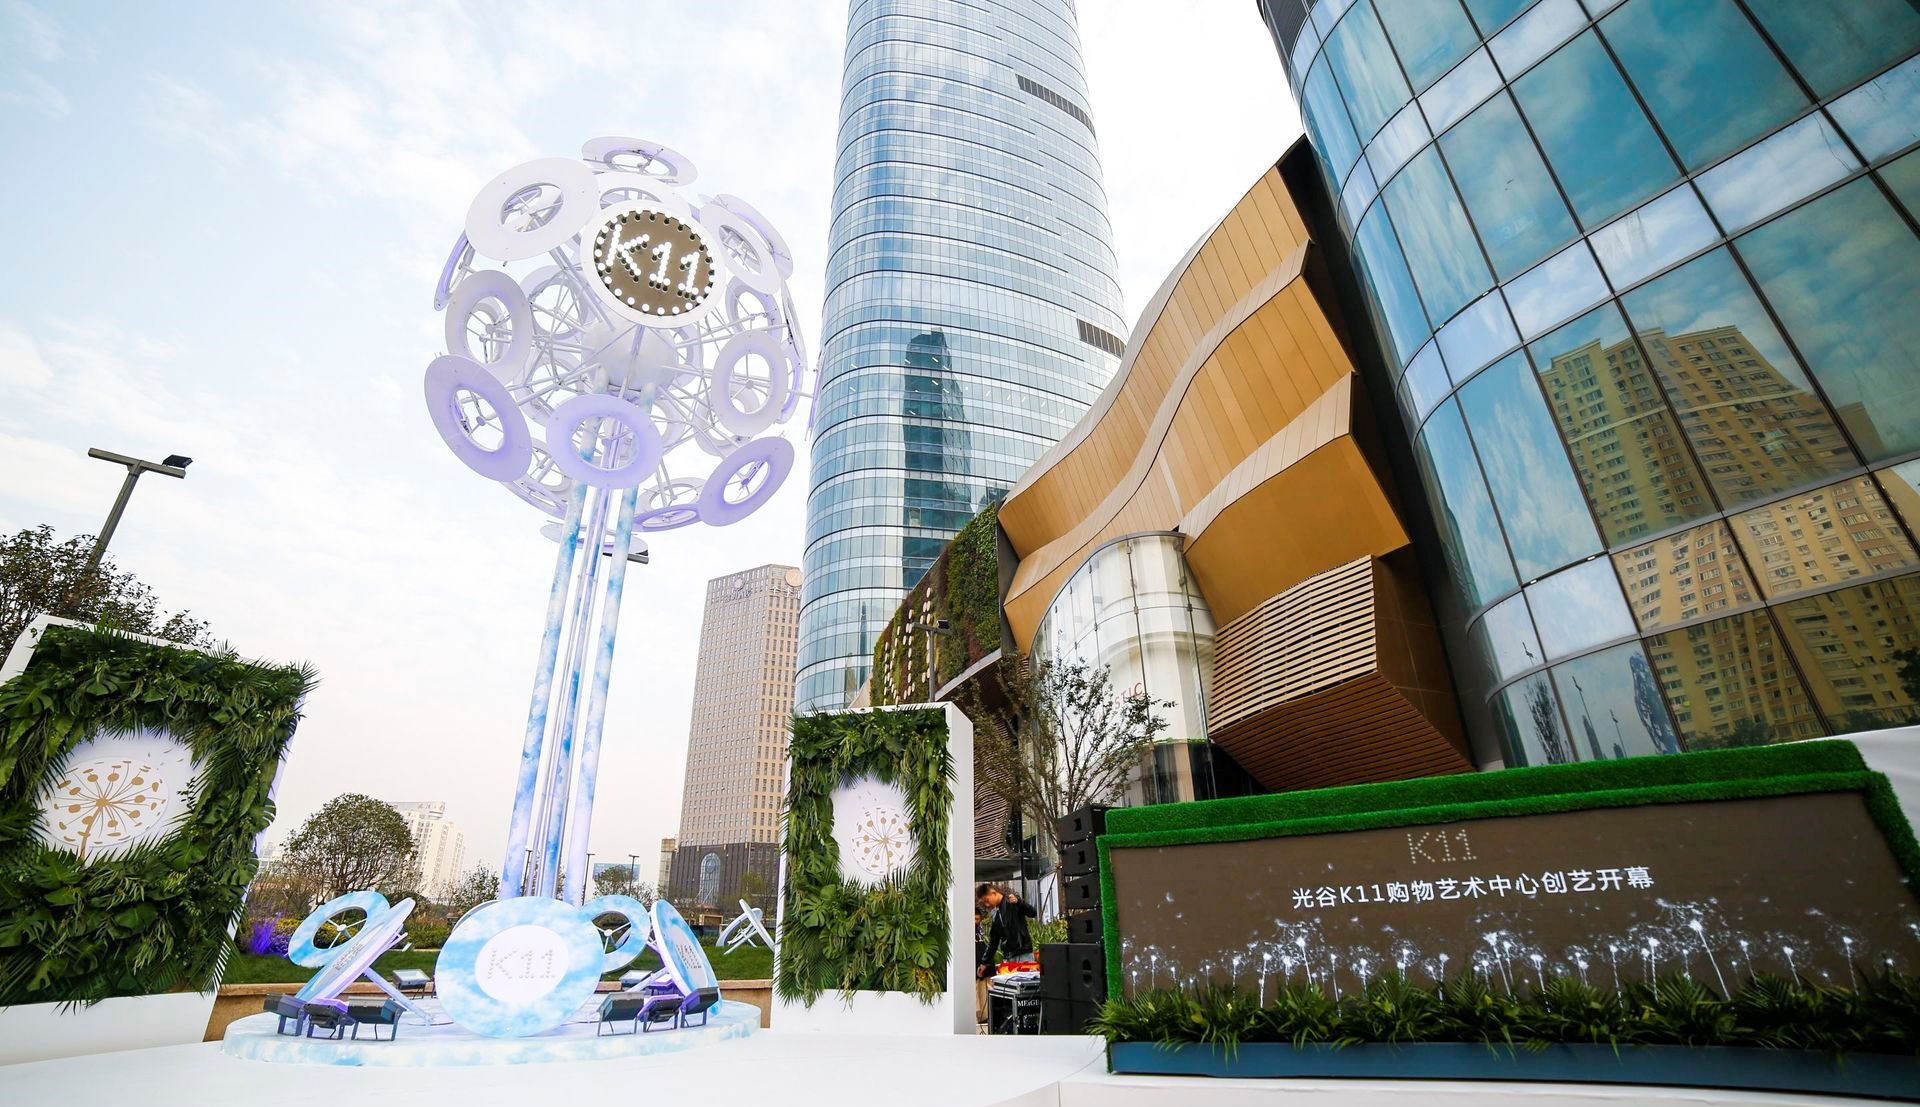 *武汉光谷k11购物艺术中心经已开幕,多个快将投入营运的k11项目